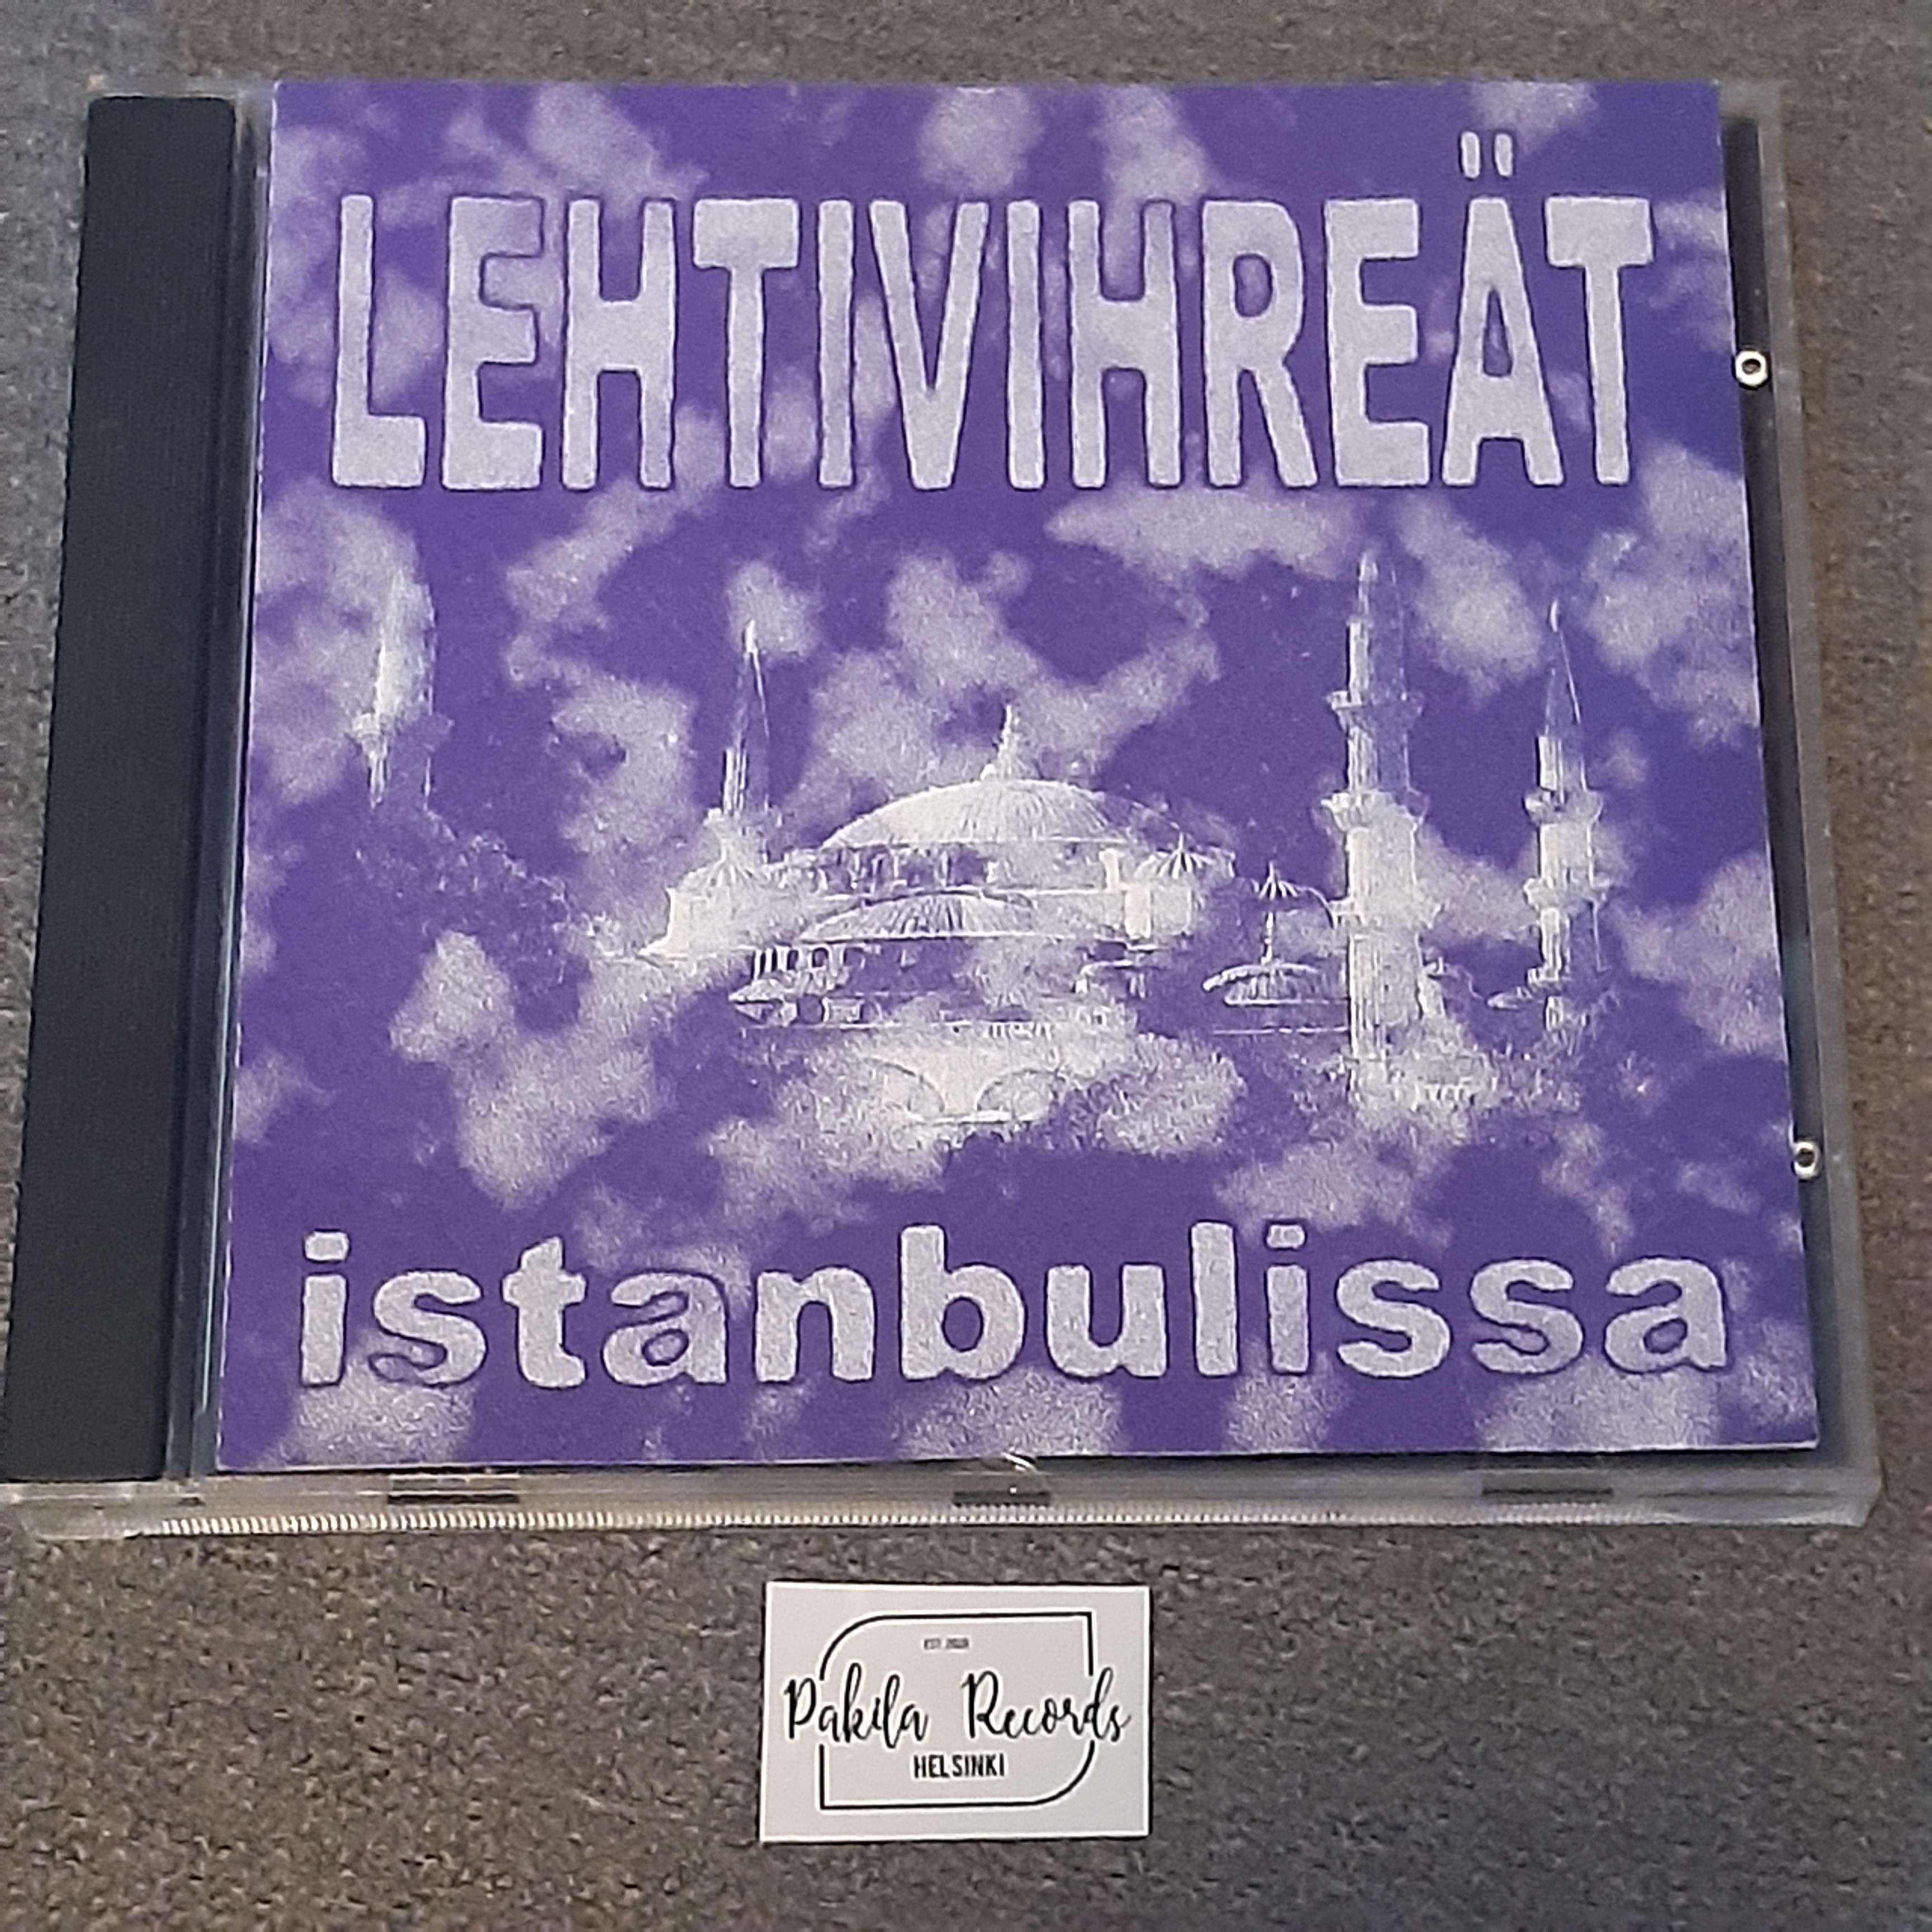 Lehtivihreät - Istanbulissa - CD (käytetty)